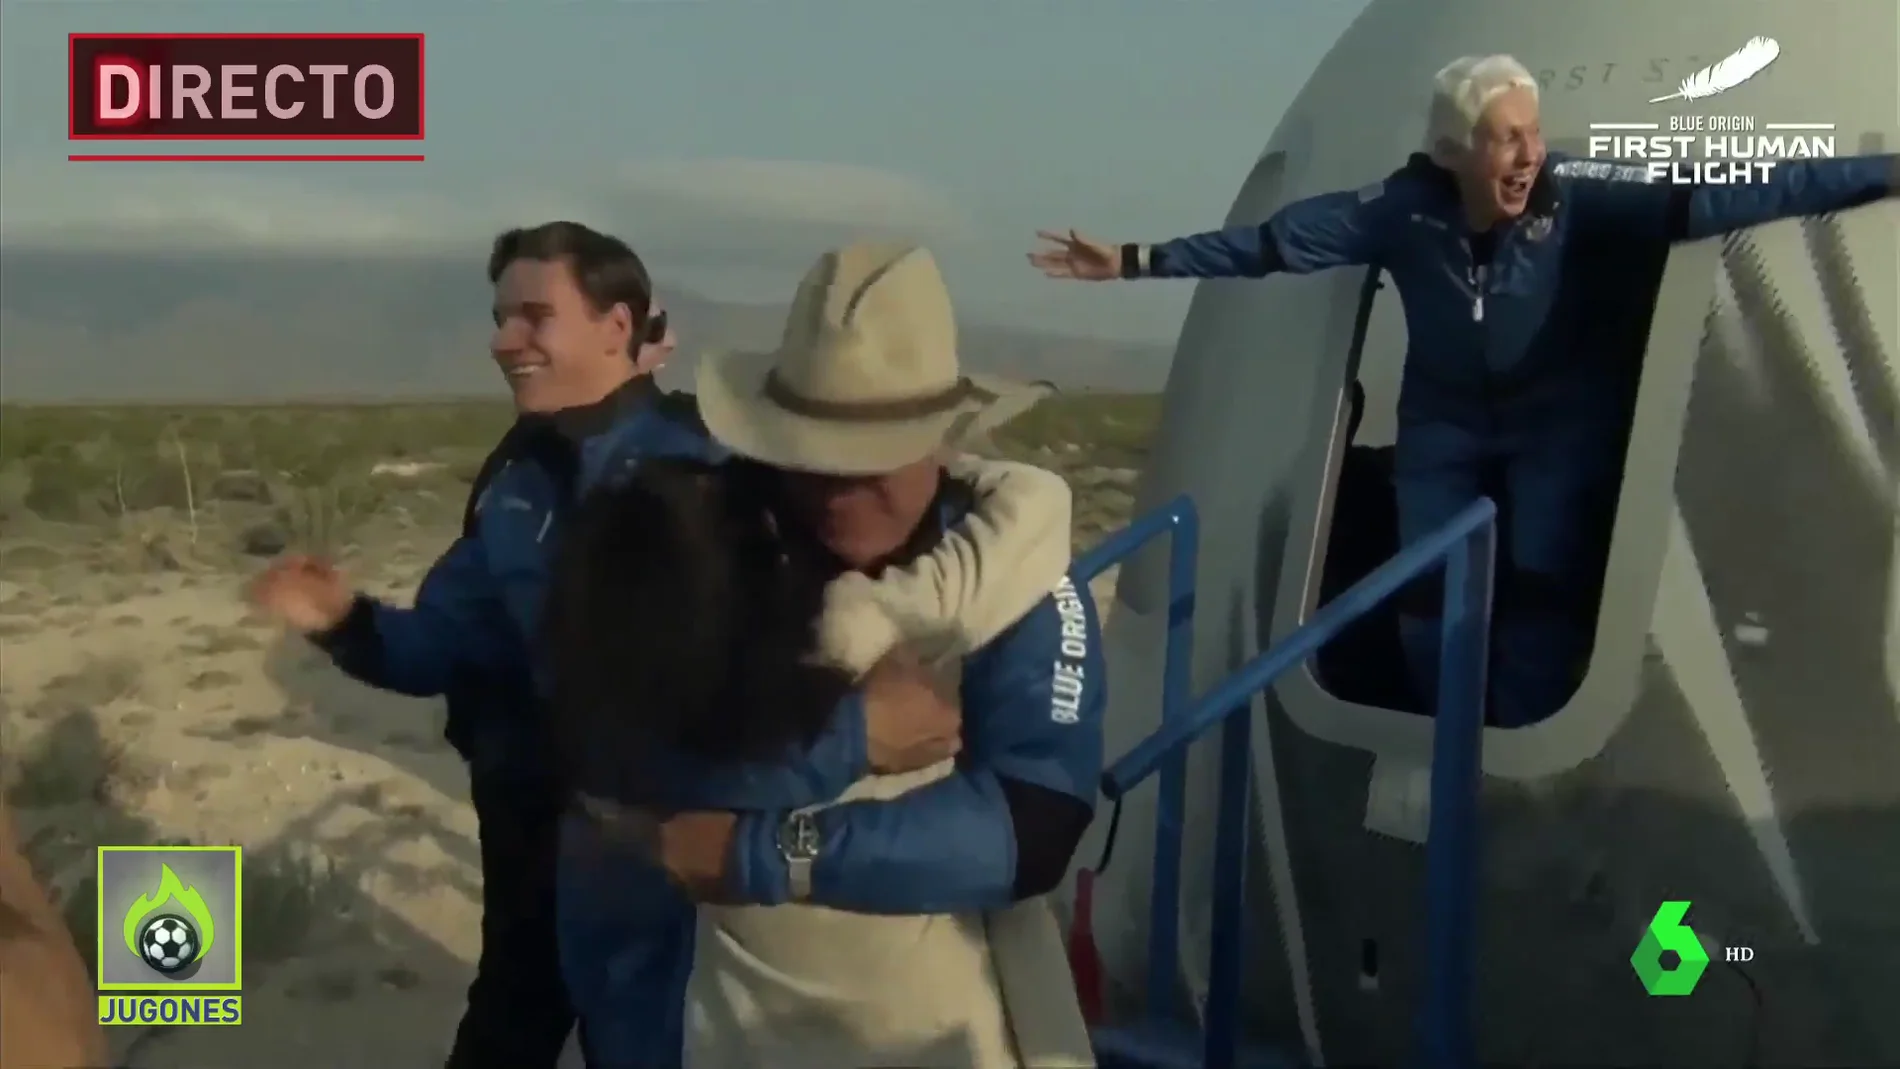 Vídeo en directo: Jeff Bezos viaja al espacio en la nave New Shepard con Blue Origin, streaming hoy